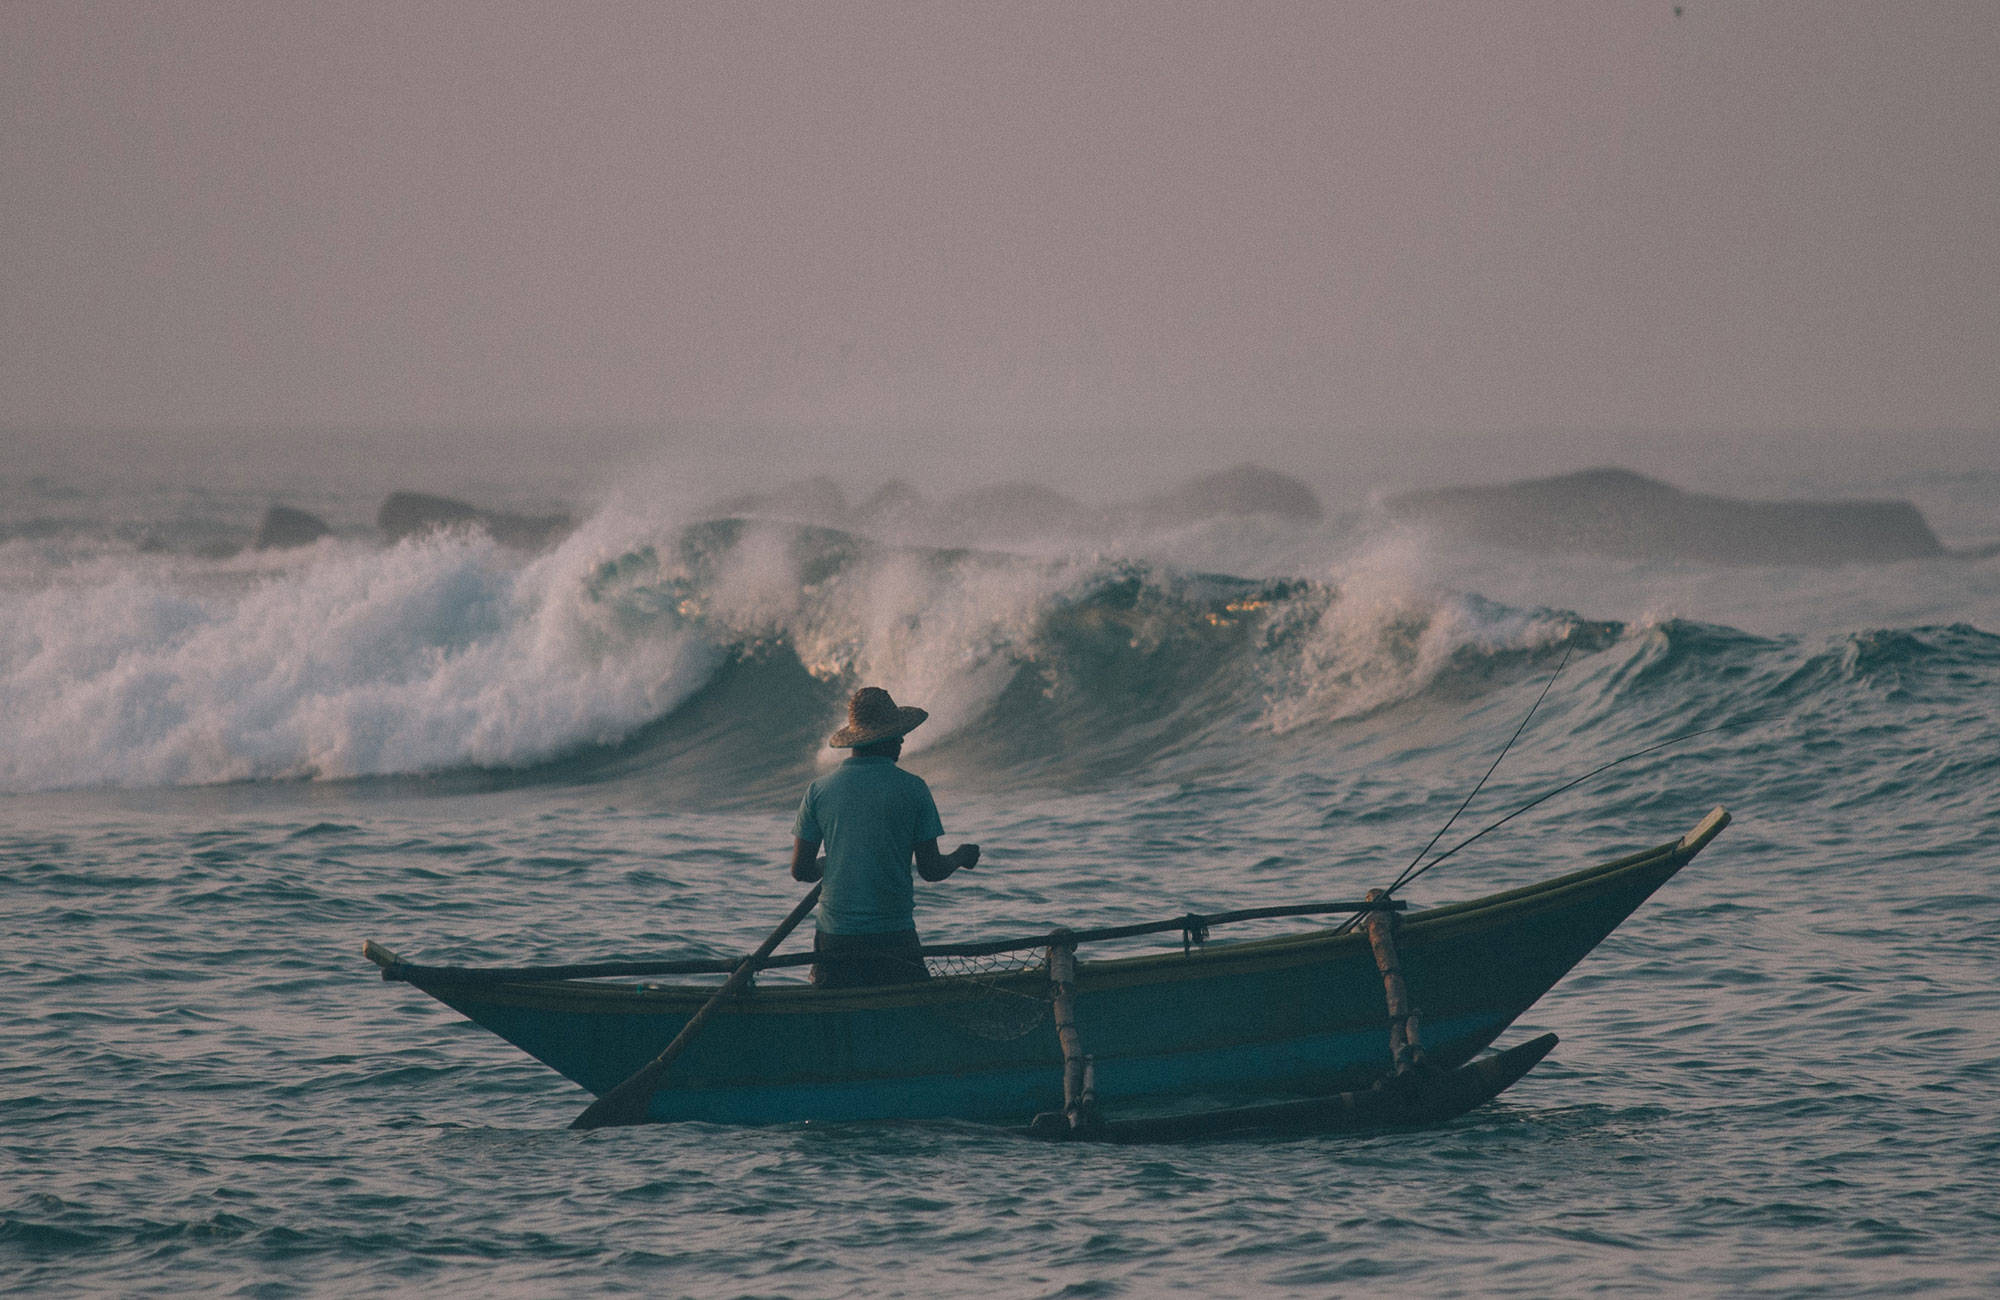 Sri Lanka byder på gode bølger hvis du er til surfing